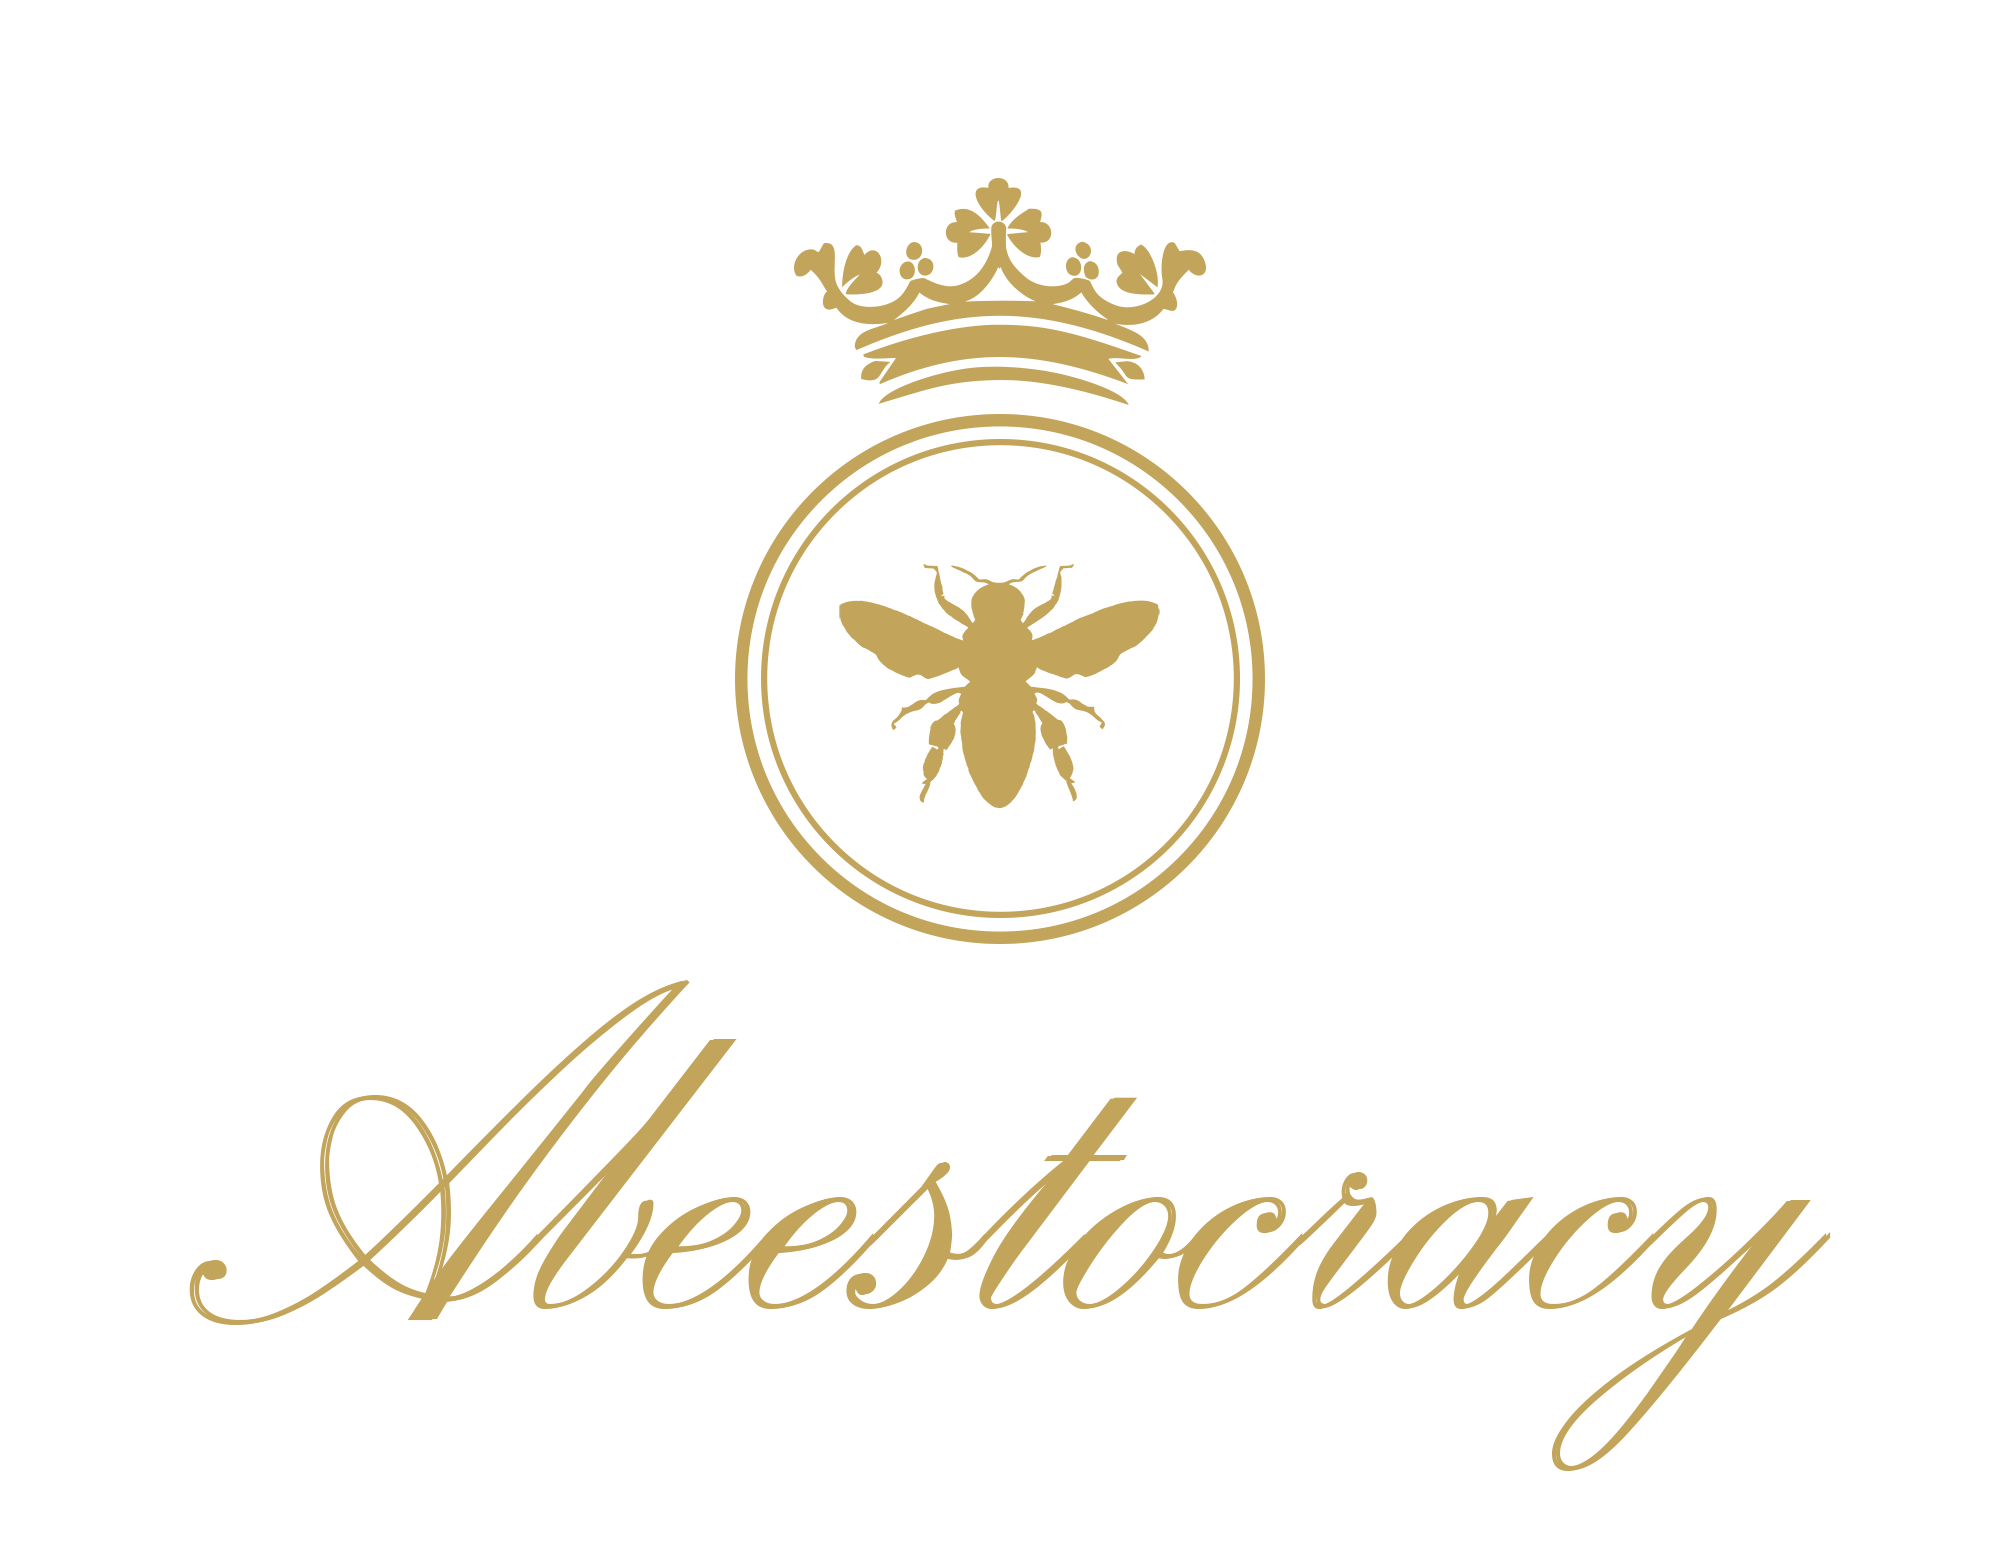 Abeestocracy